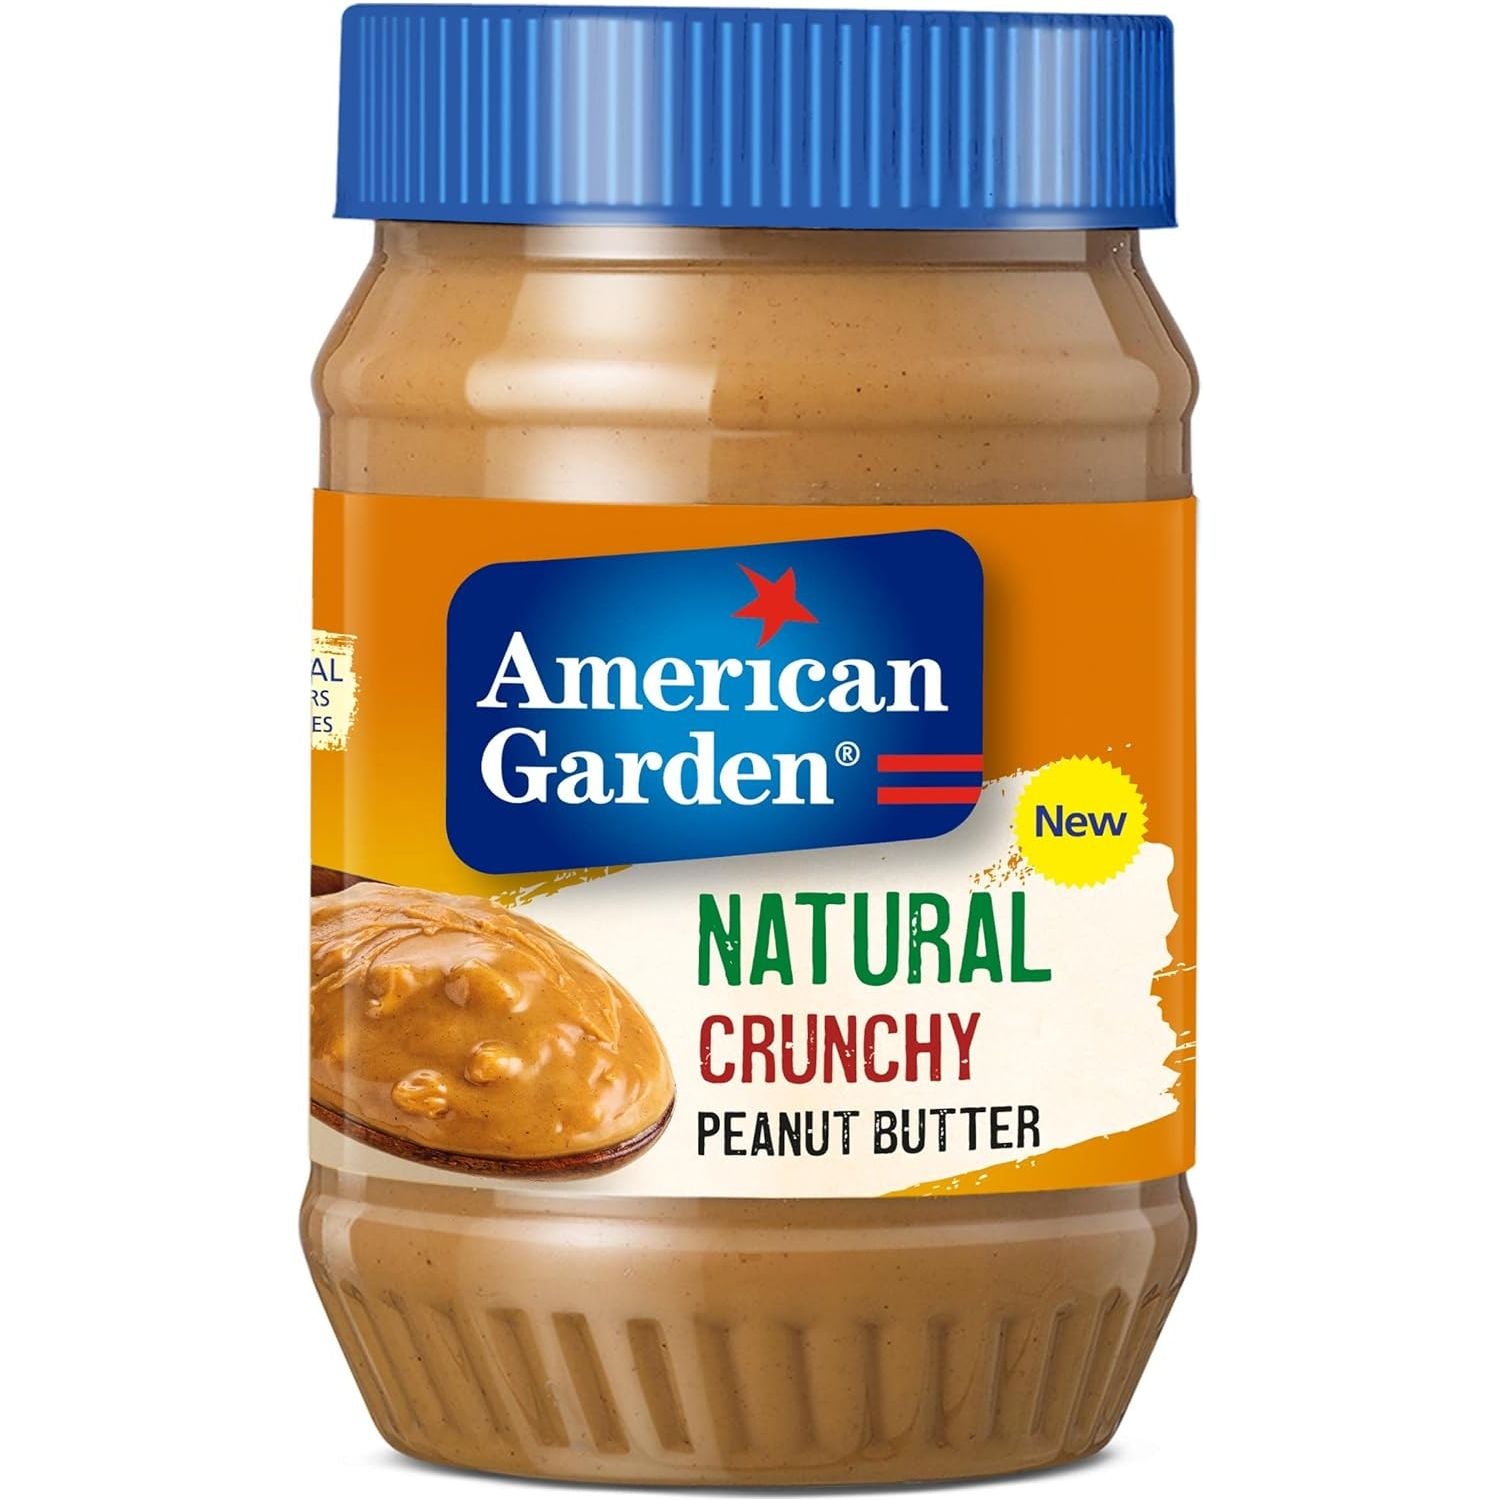 American Garden Natural Crunchy Peanut Butter, Vegan, Gluten Free, 454g